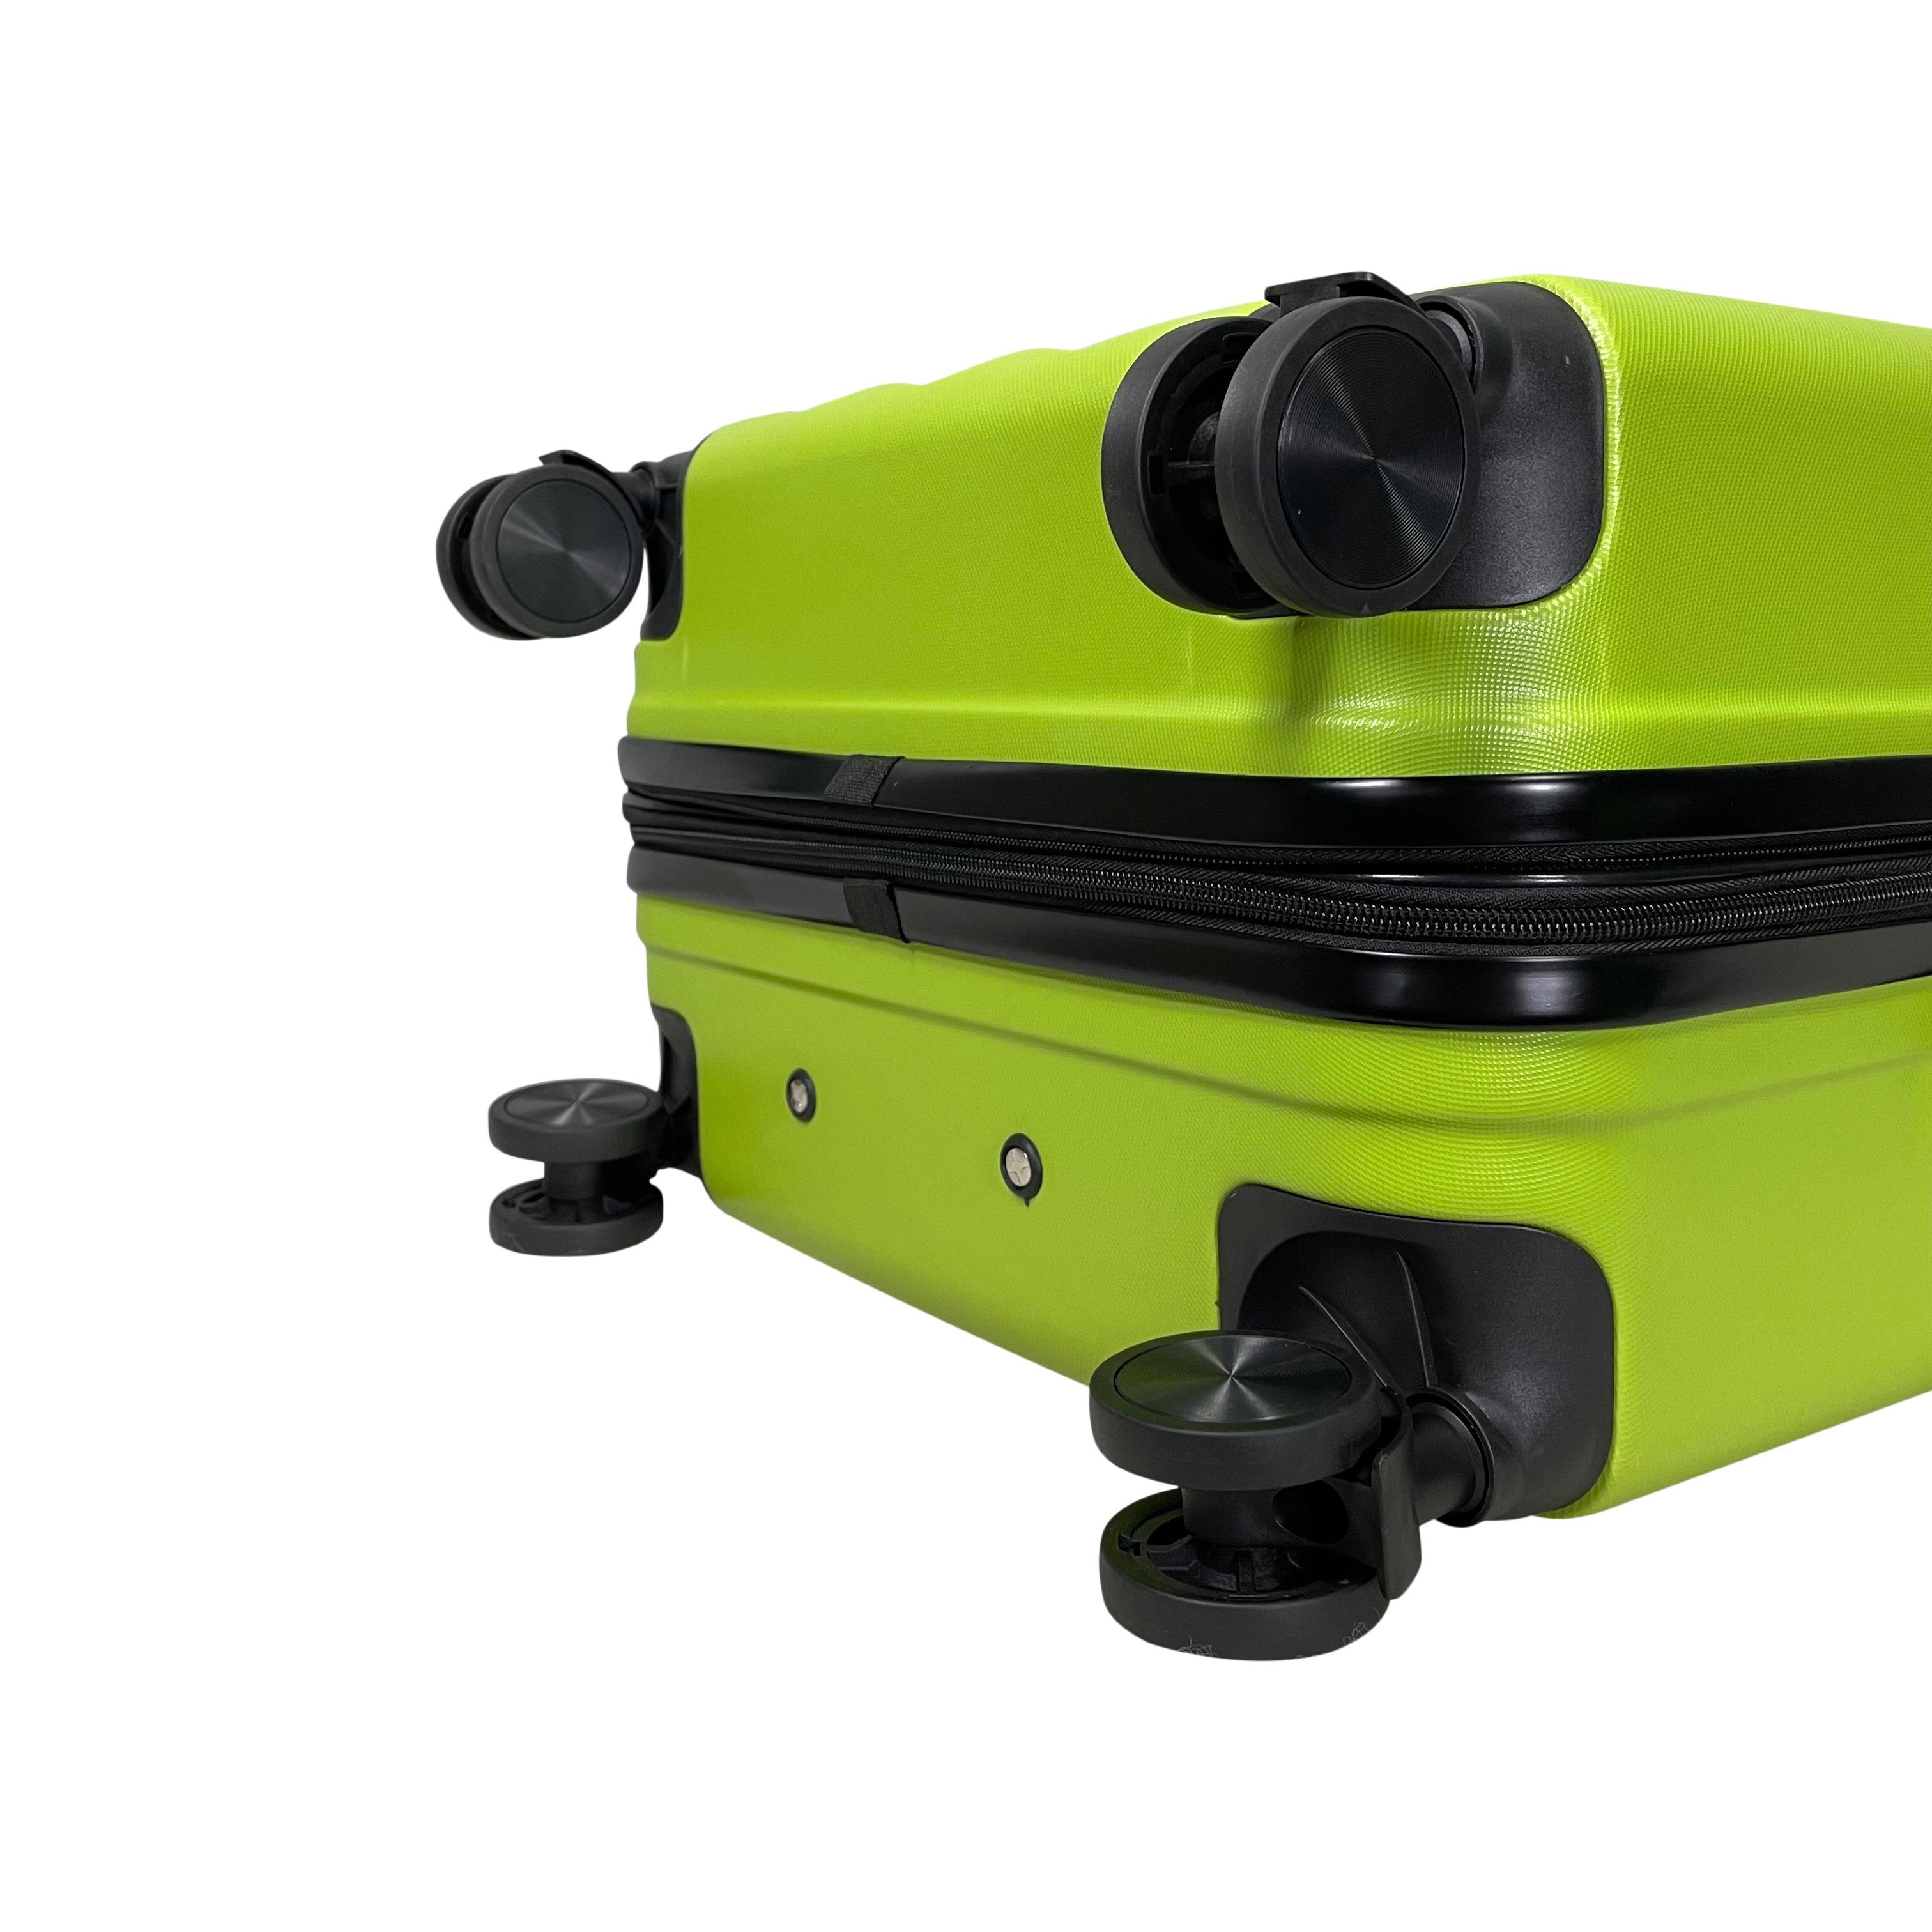 Hartschalen erweiterbar ABS (Handgepäck-Mittel-Groß-Set) Grün Reisekoffer Koffer MTB